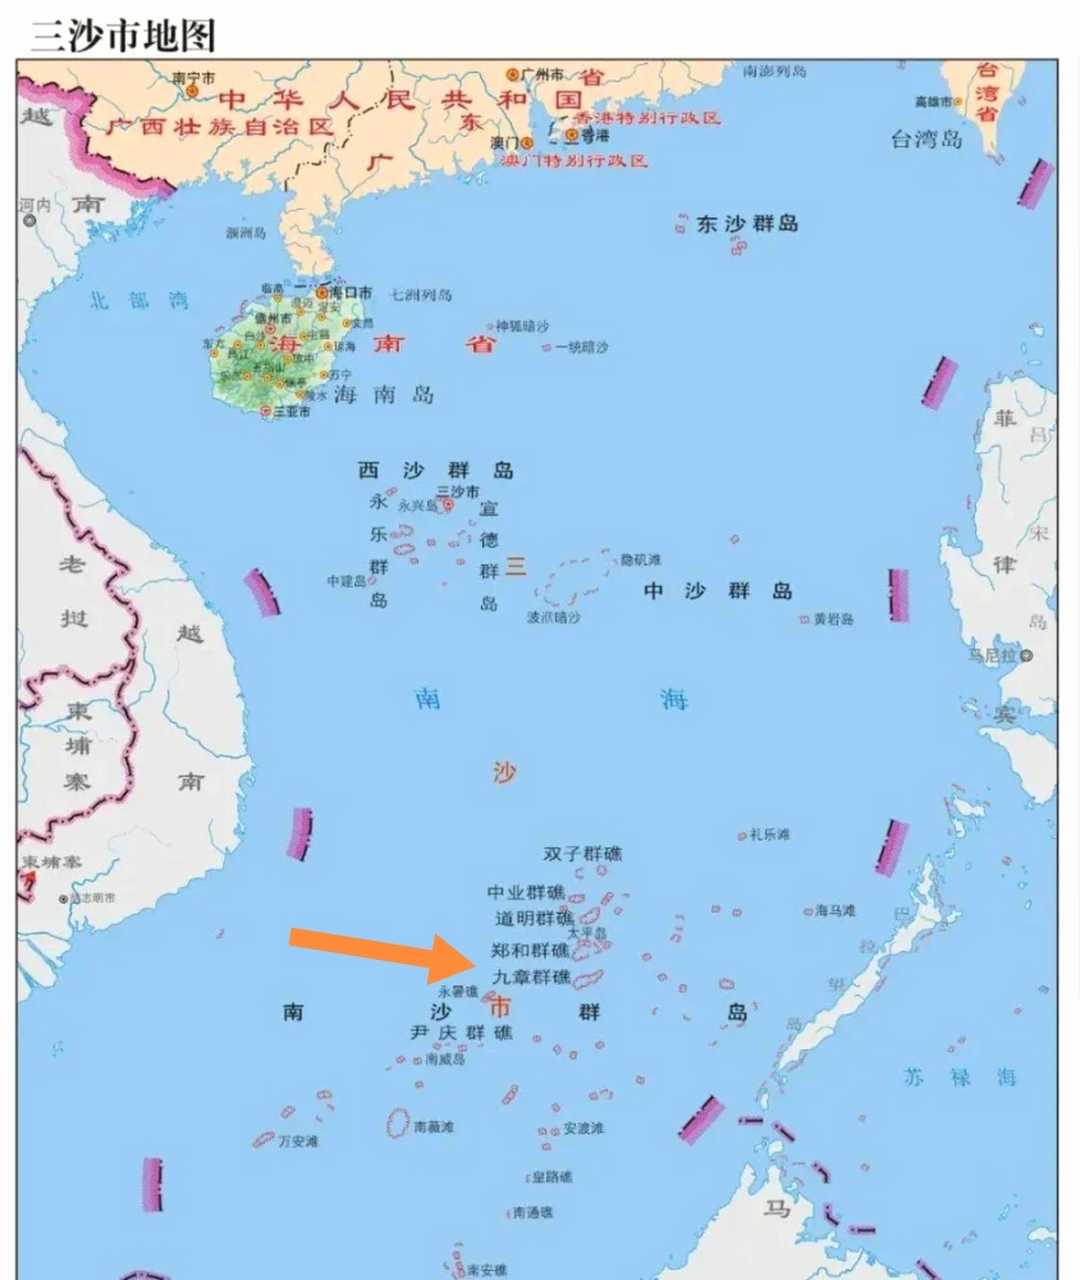 为什么越南对南海牛轭礁垂涎三尺,看其地理位置就知道有多重要了